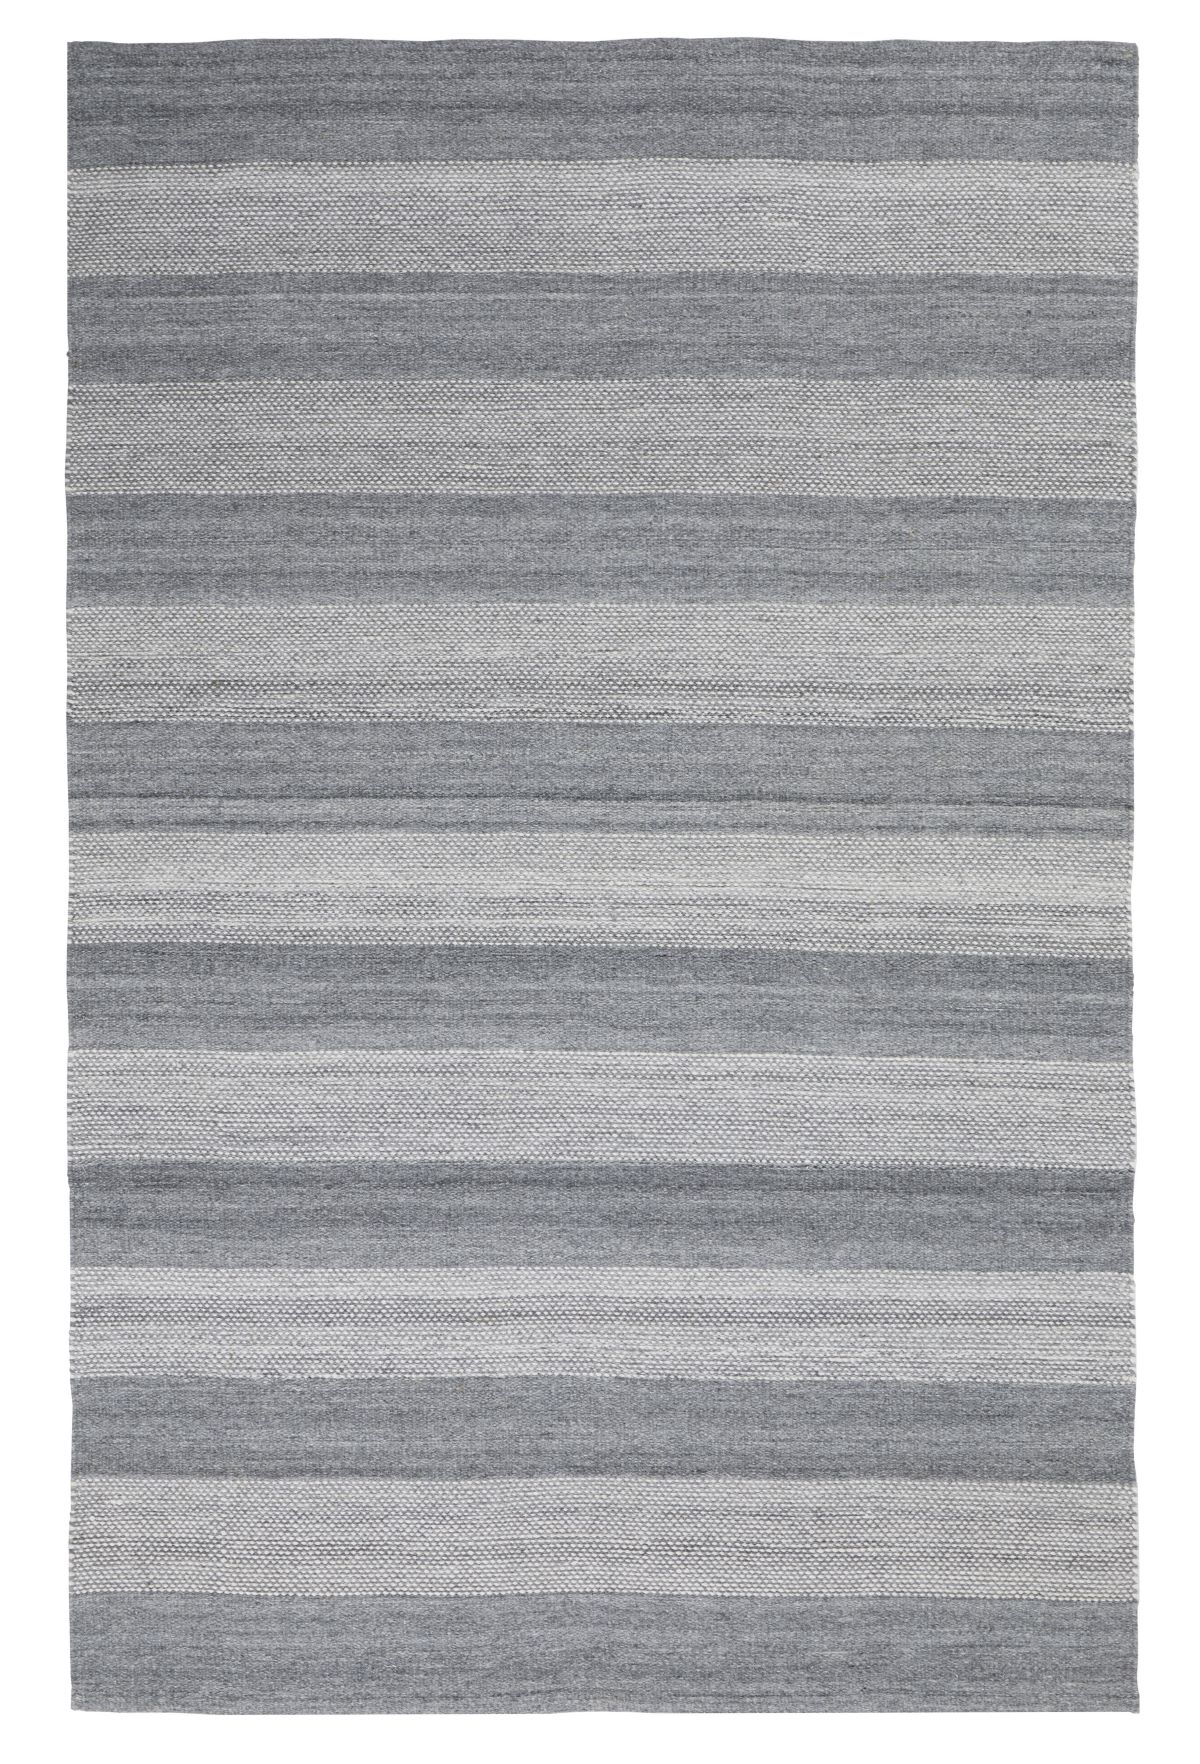 walton-&-co-rug-chambray-stripe-grey